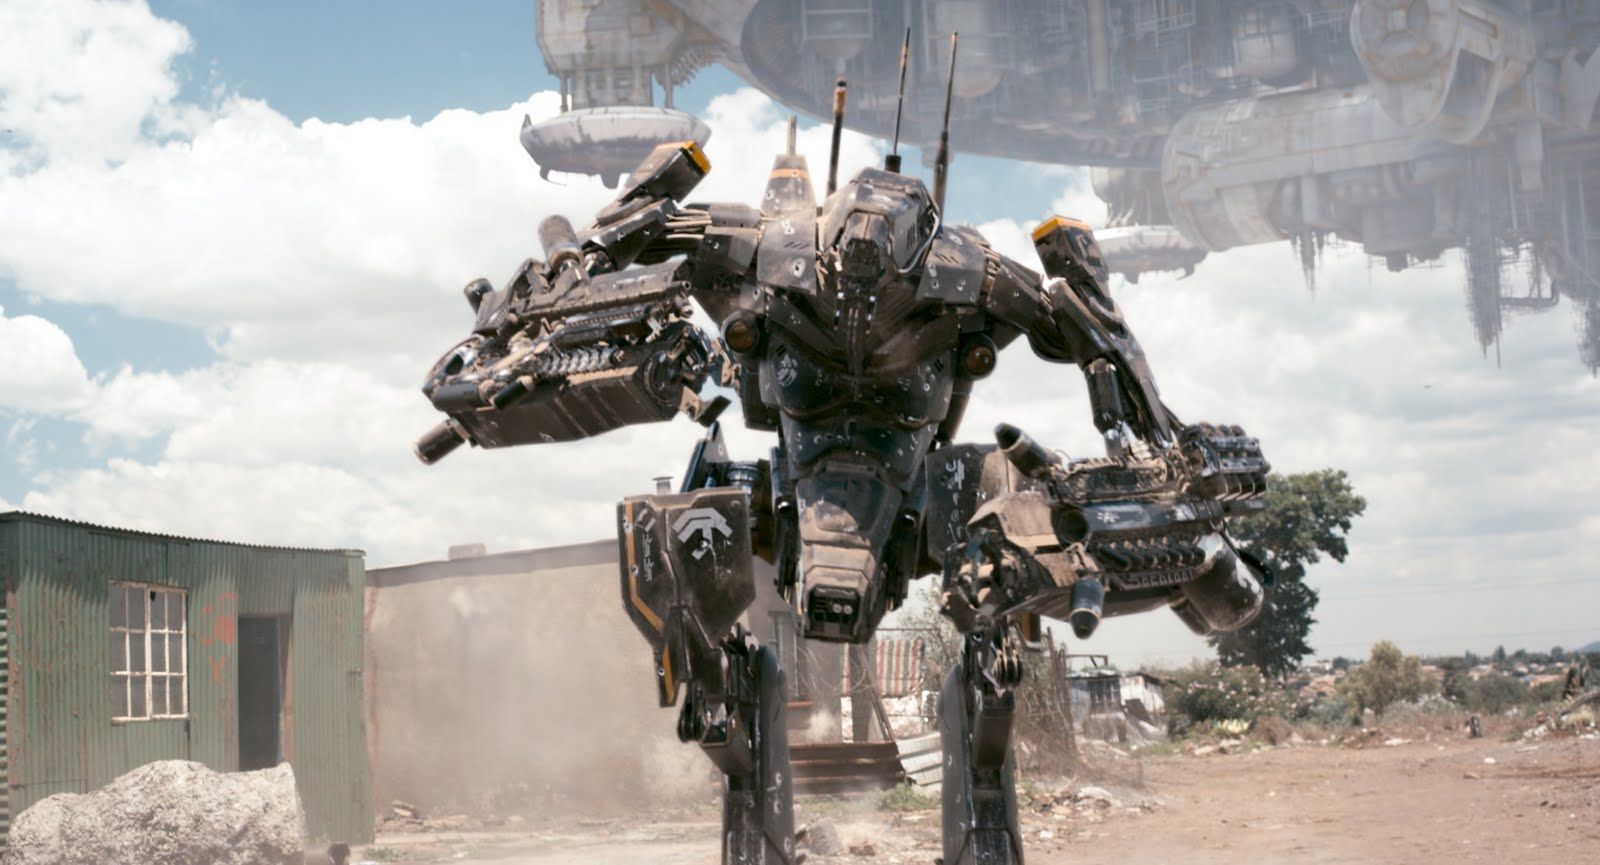 District 9 robotic armour suit. Alien life forms, Mech, Sci fi films